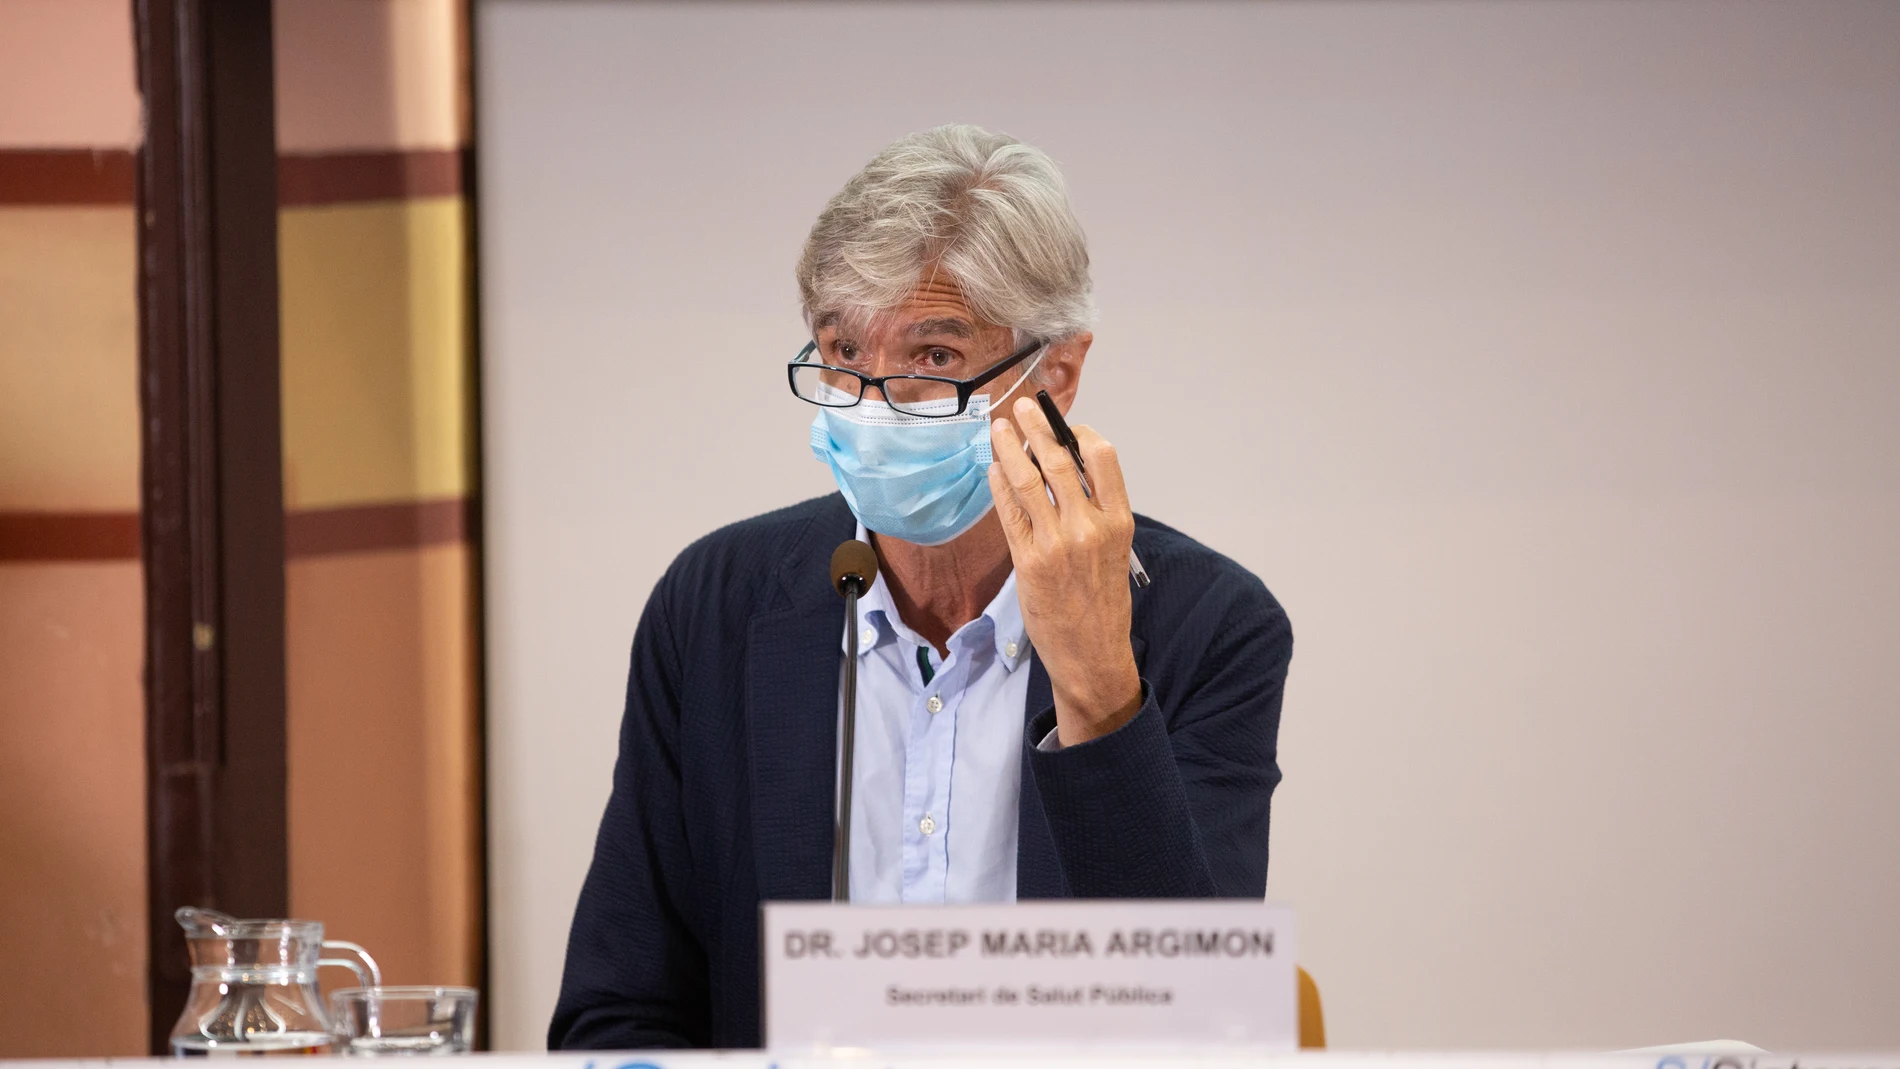 El secretario de Salud Pública de la Generalitat, Josep Maria Argimón, ha dado positivo en un segundo test PCR, cinco días después de tener contacto con un infectado.David Zorrakino / Europa Press22/09/2020